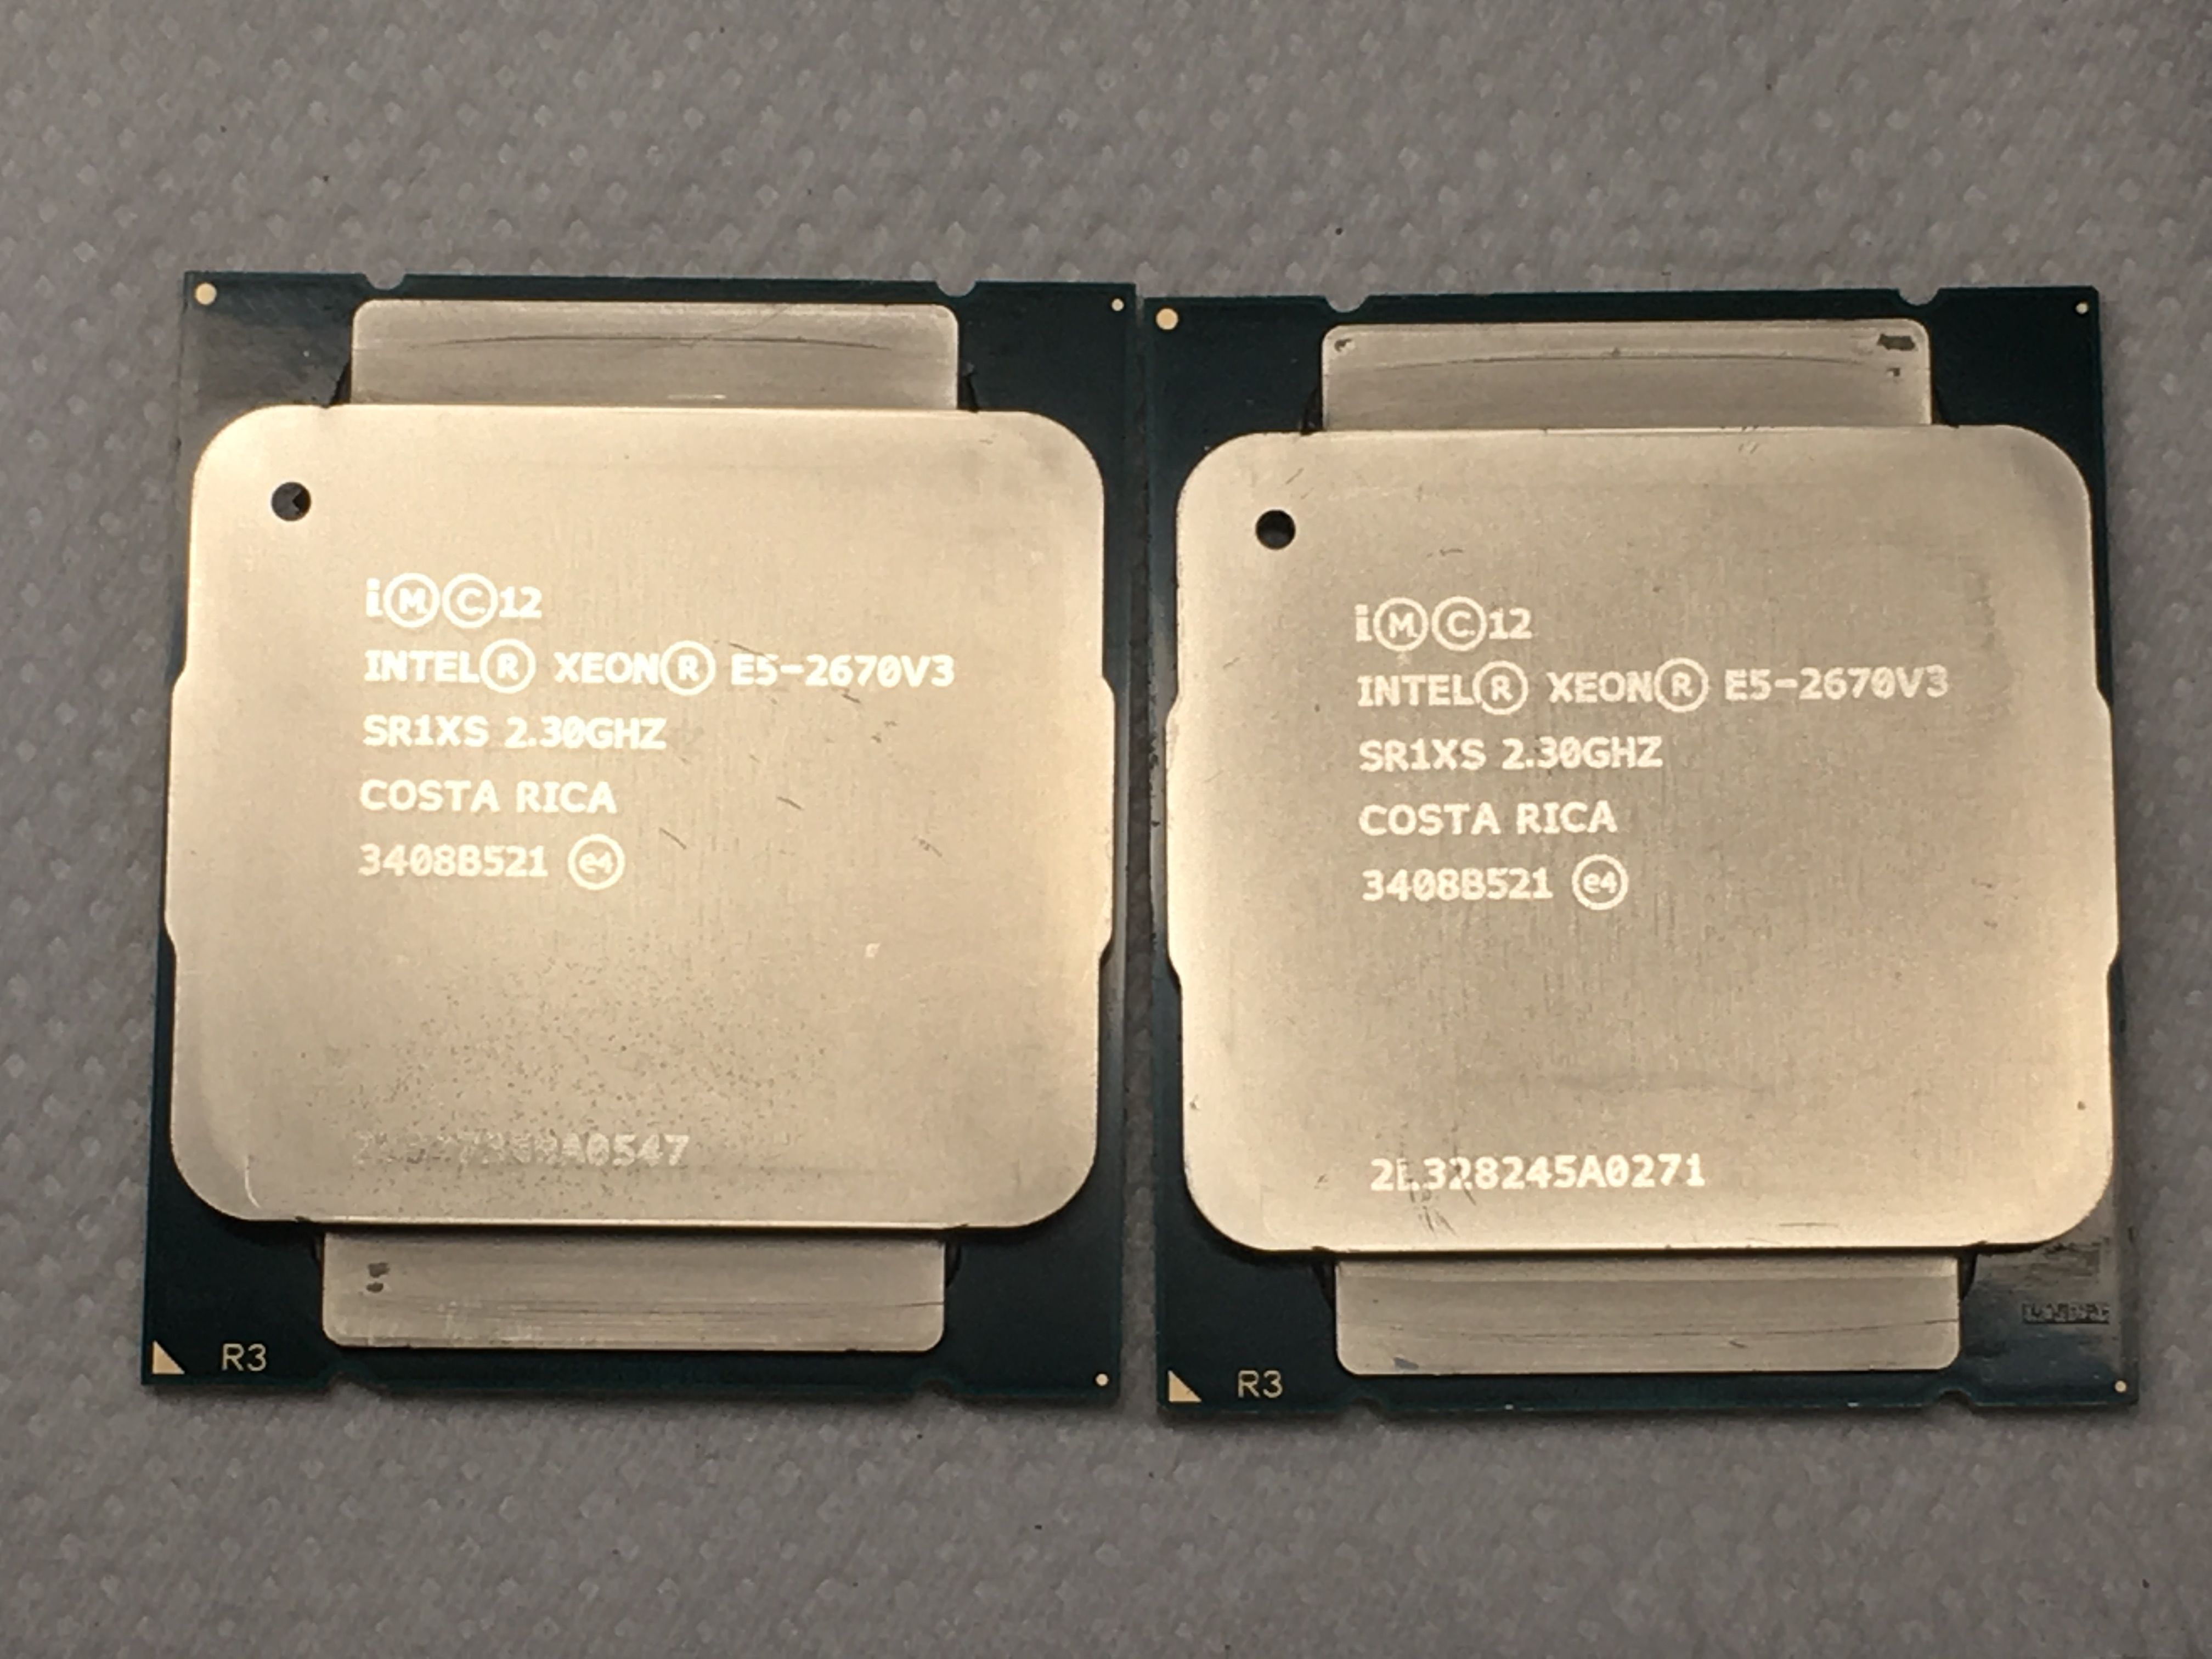 Интел е5 2670. Процессор Intel Xeon e5-2670v3 Haswell-Ep. Intel Xeon 2670 v3. Intel Xeon e5 2670 v2. Процессор Xeon e5 2670 v3.